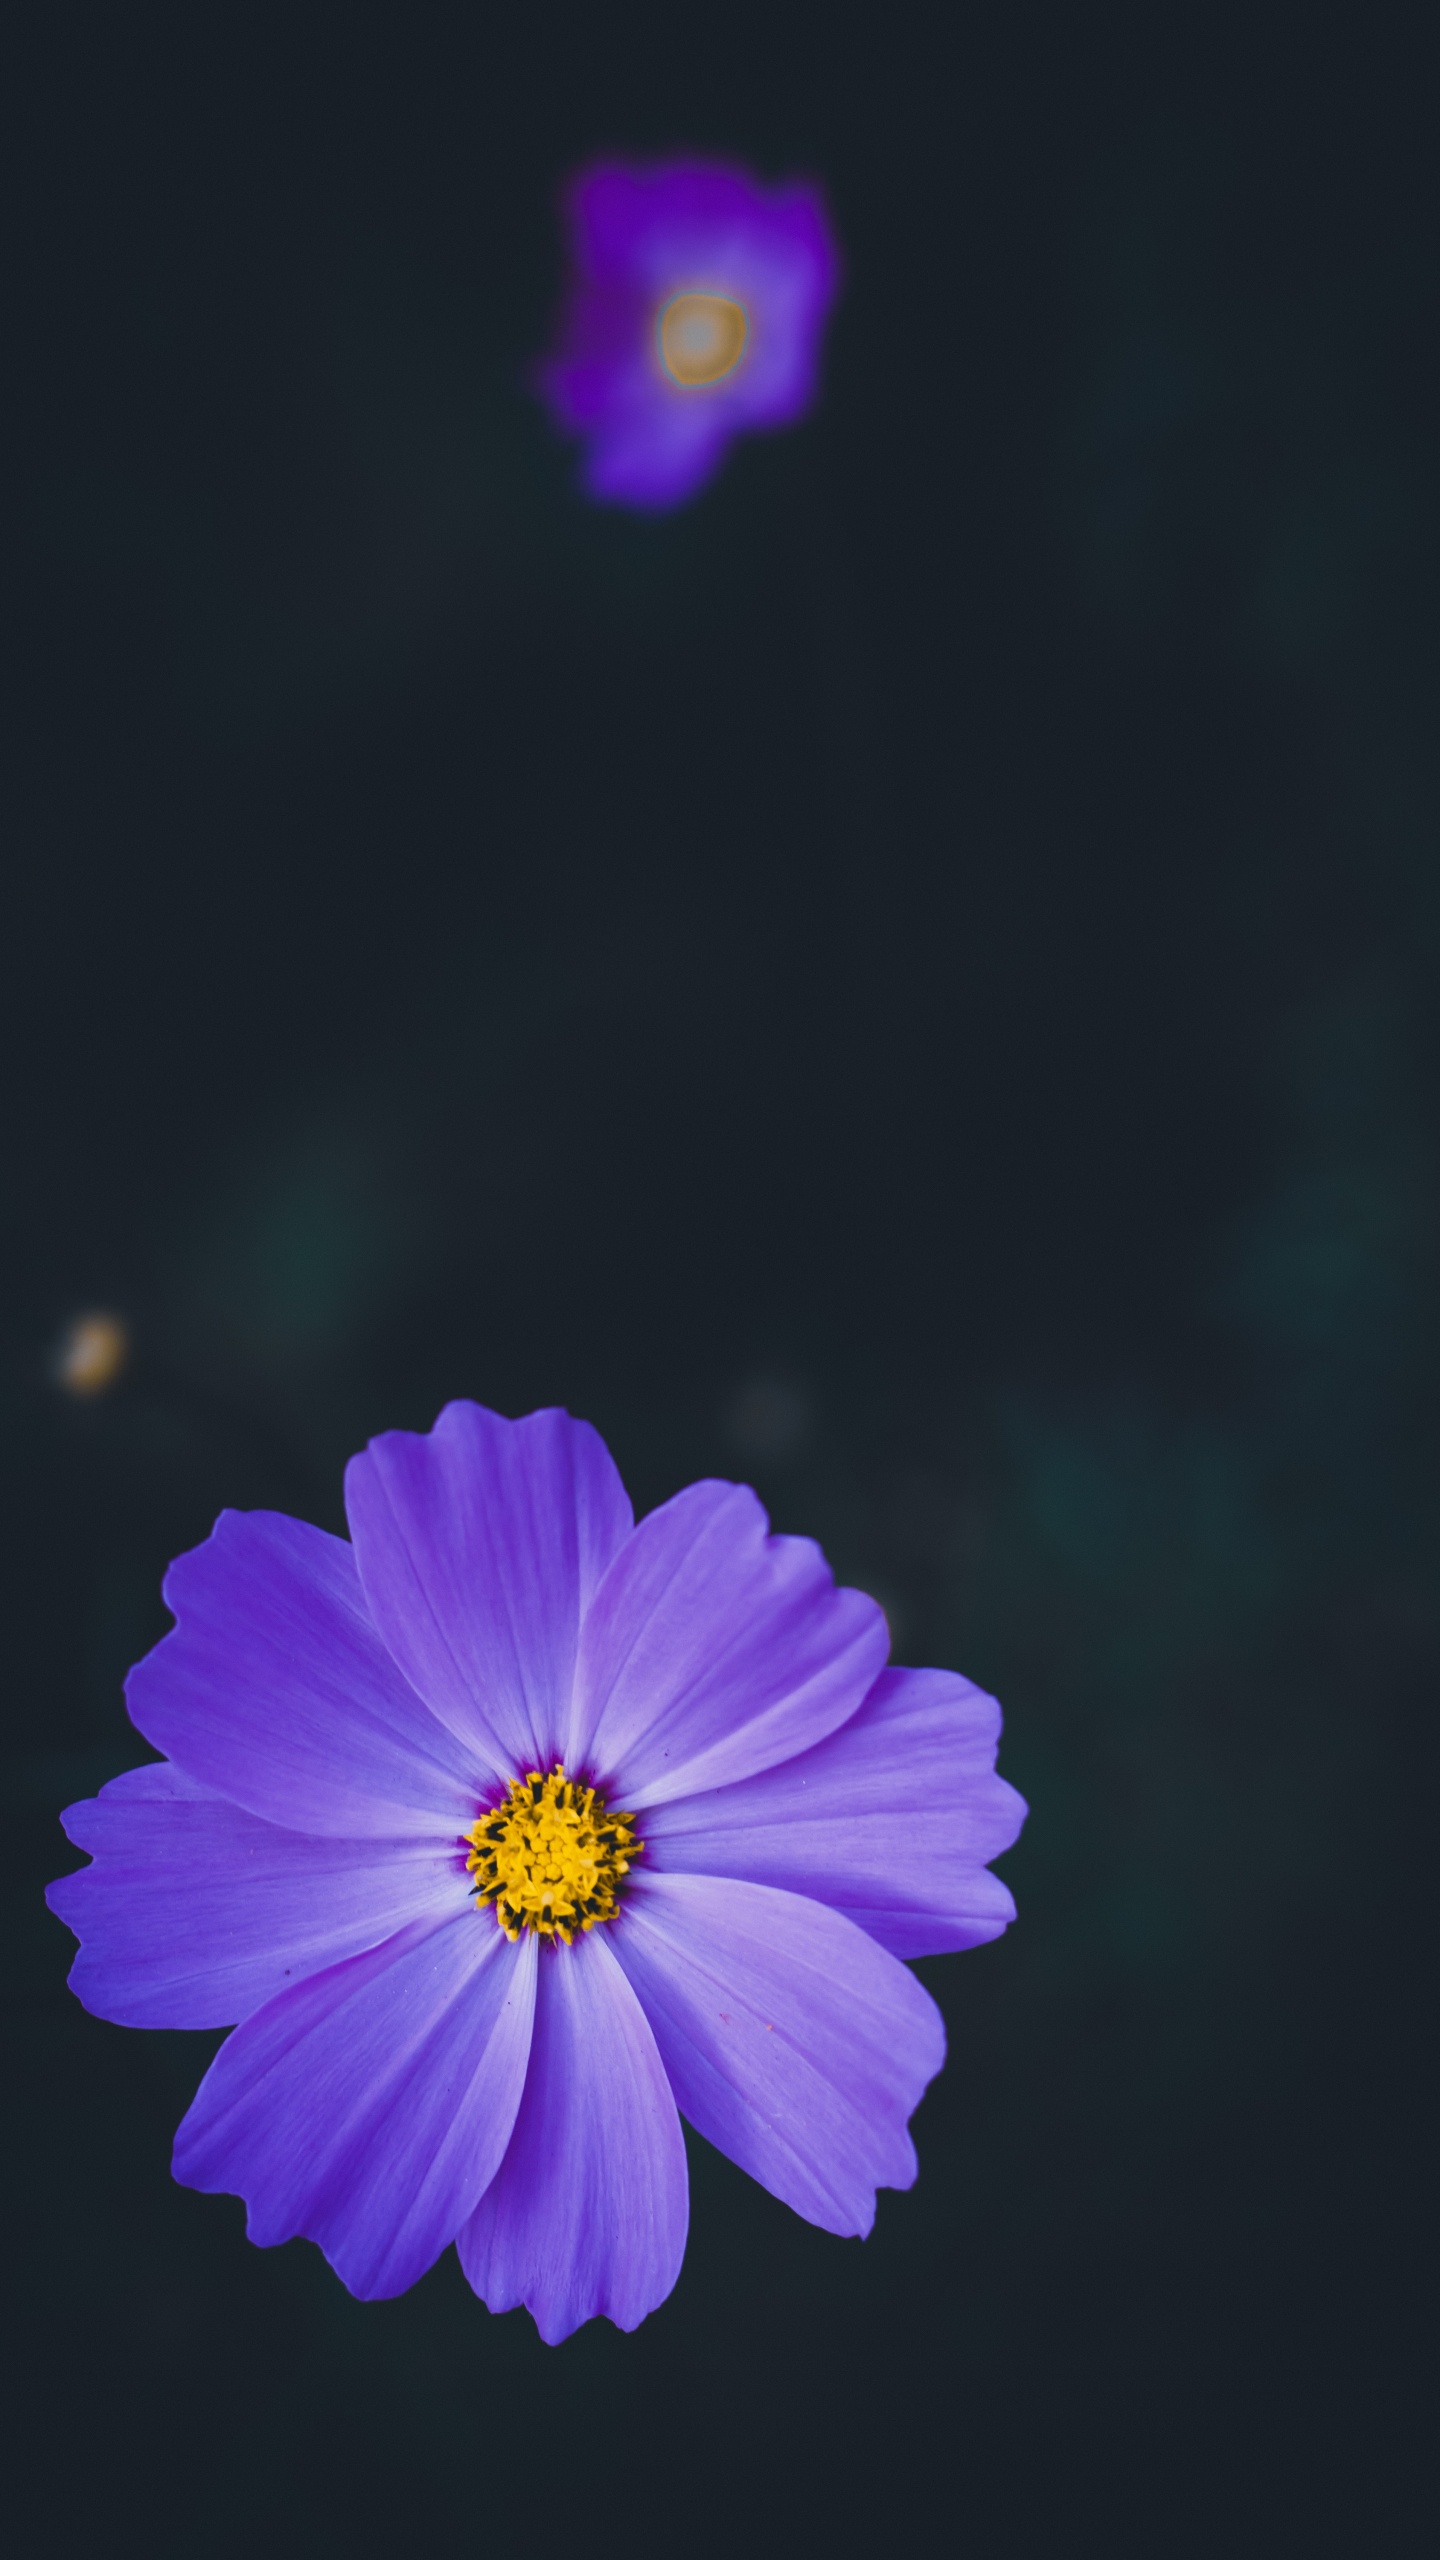 Purple Flower in Tilt Shift Lens. Wallpaper in 1440x2560 Resolution